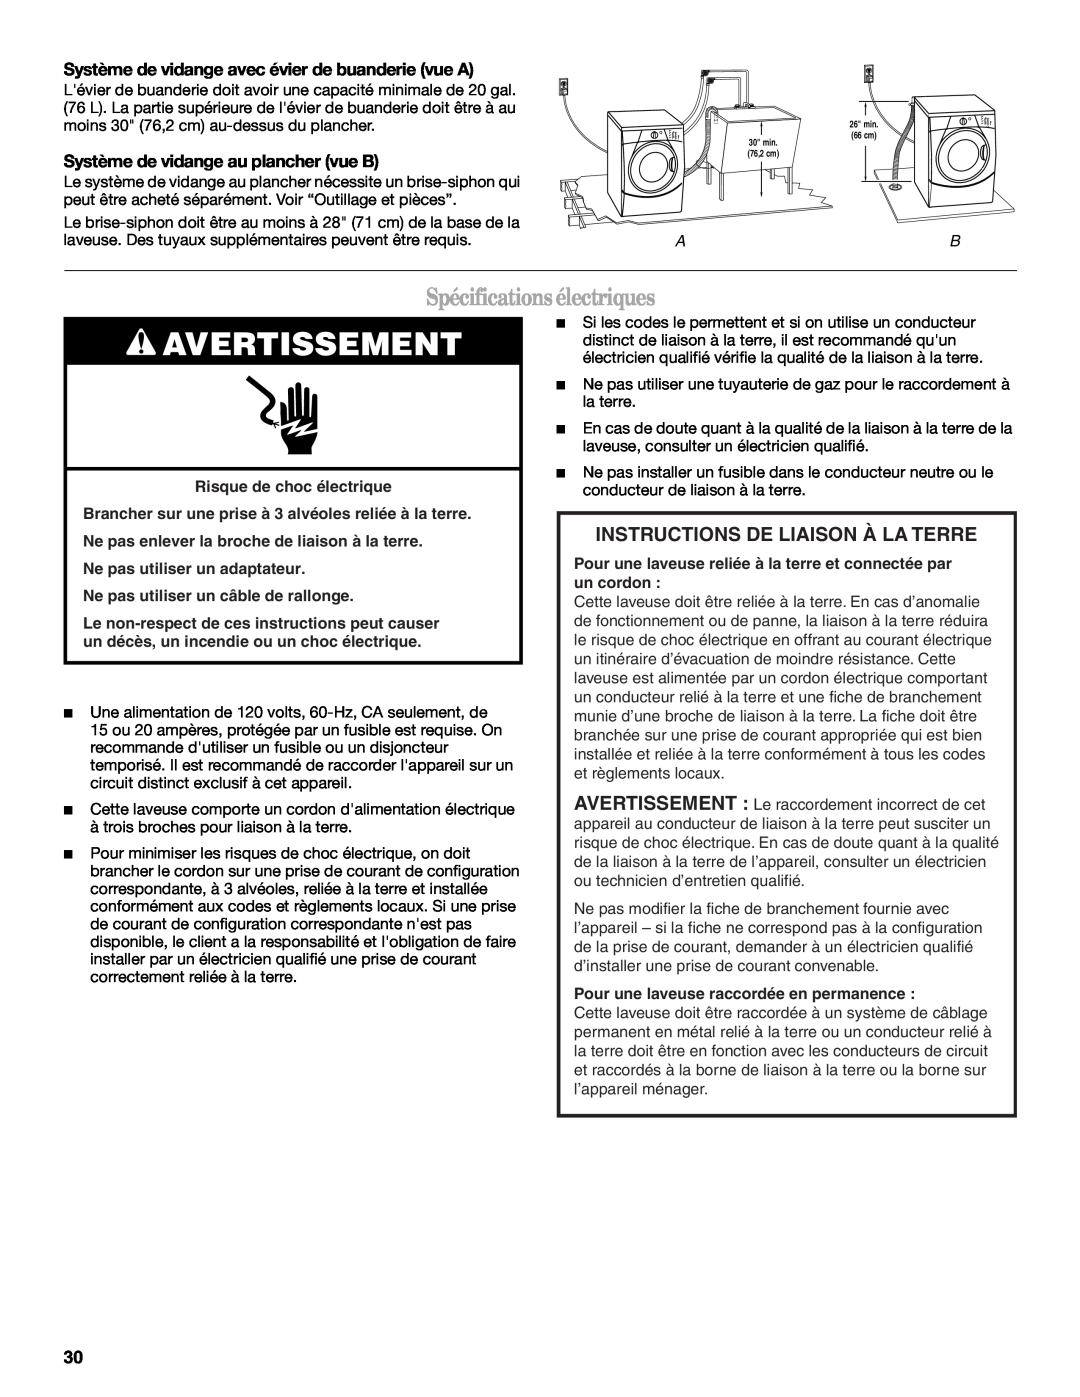 Whirlpool W10063560 manual Avertissement, Spécificationsélectriques, Instructions De Liaison À La Terre 